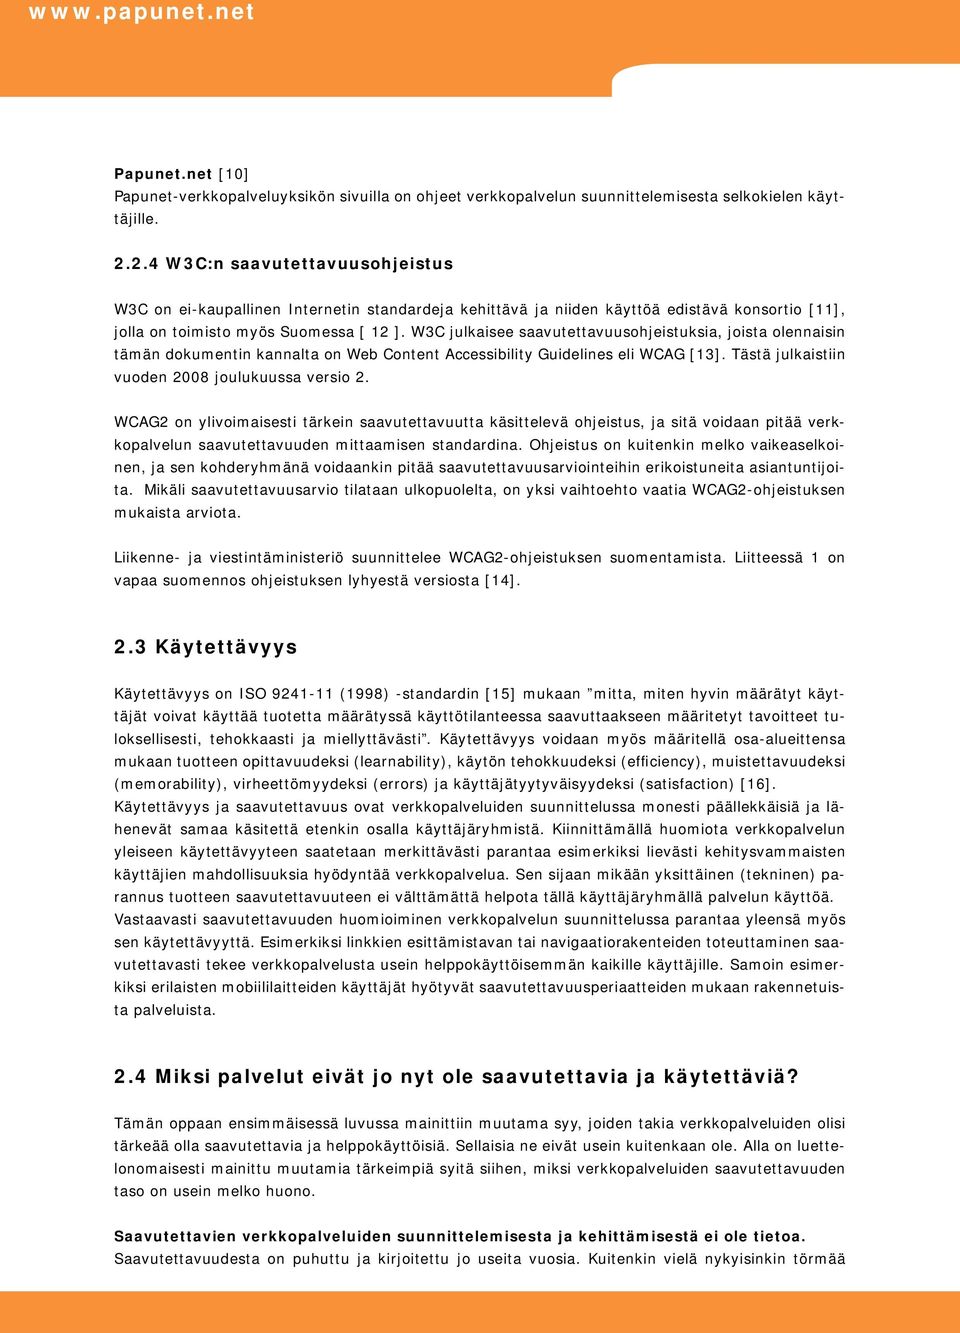 W3C julkaisee saavutettavuusohjeistuksia, joista olennaisin tämän dokumentin kannalta on Web Content Accessibility Guidelines eli WCAG [13]. Tästä julkaistiin vuoden 2008 joulukuussa versio 2.